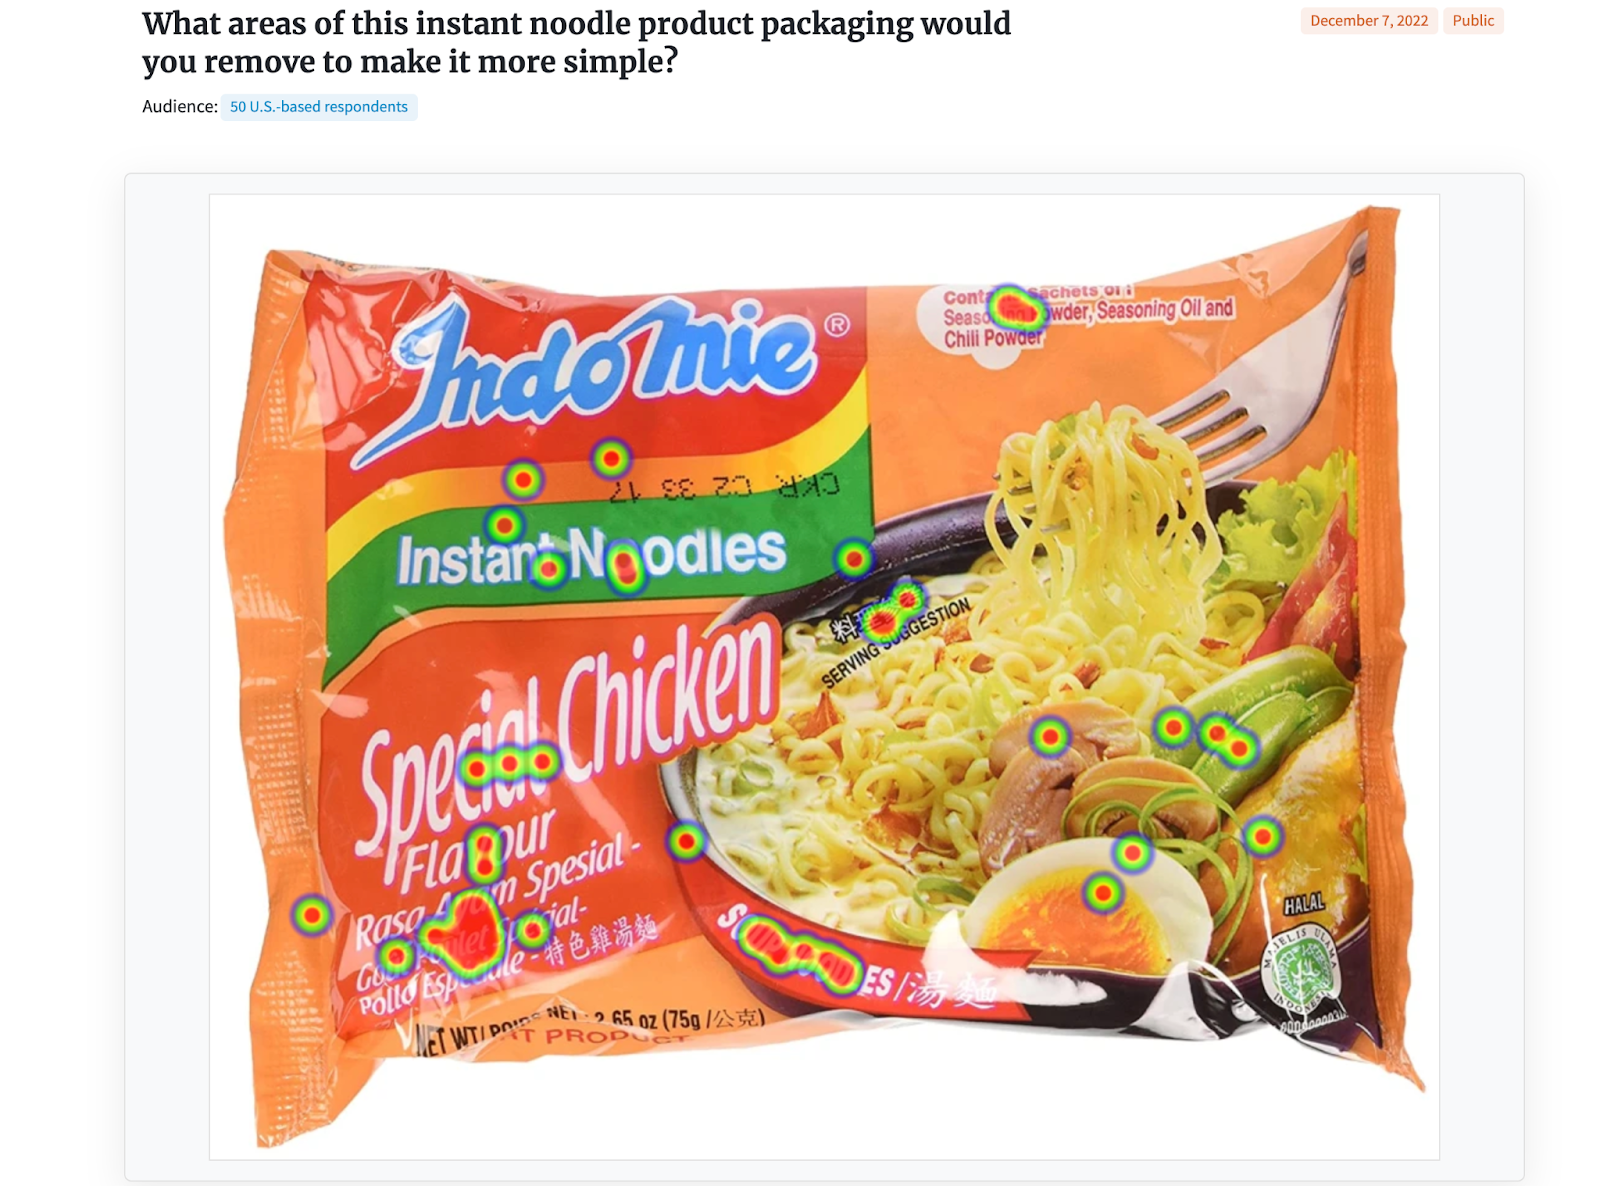 Heatmap for ramen noodles from PickFu